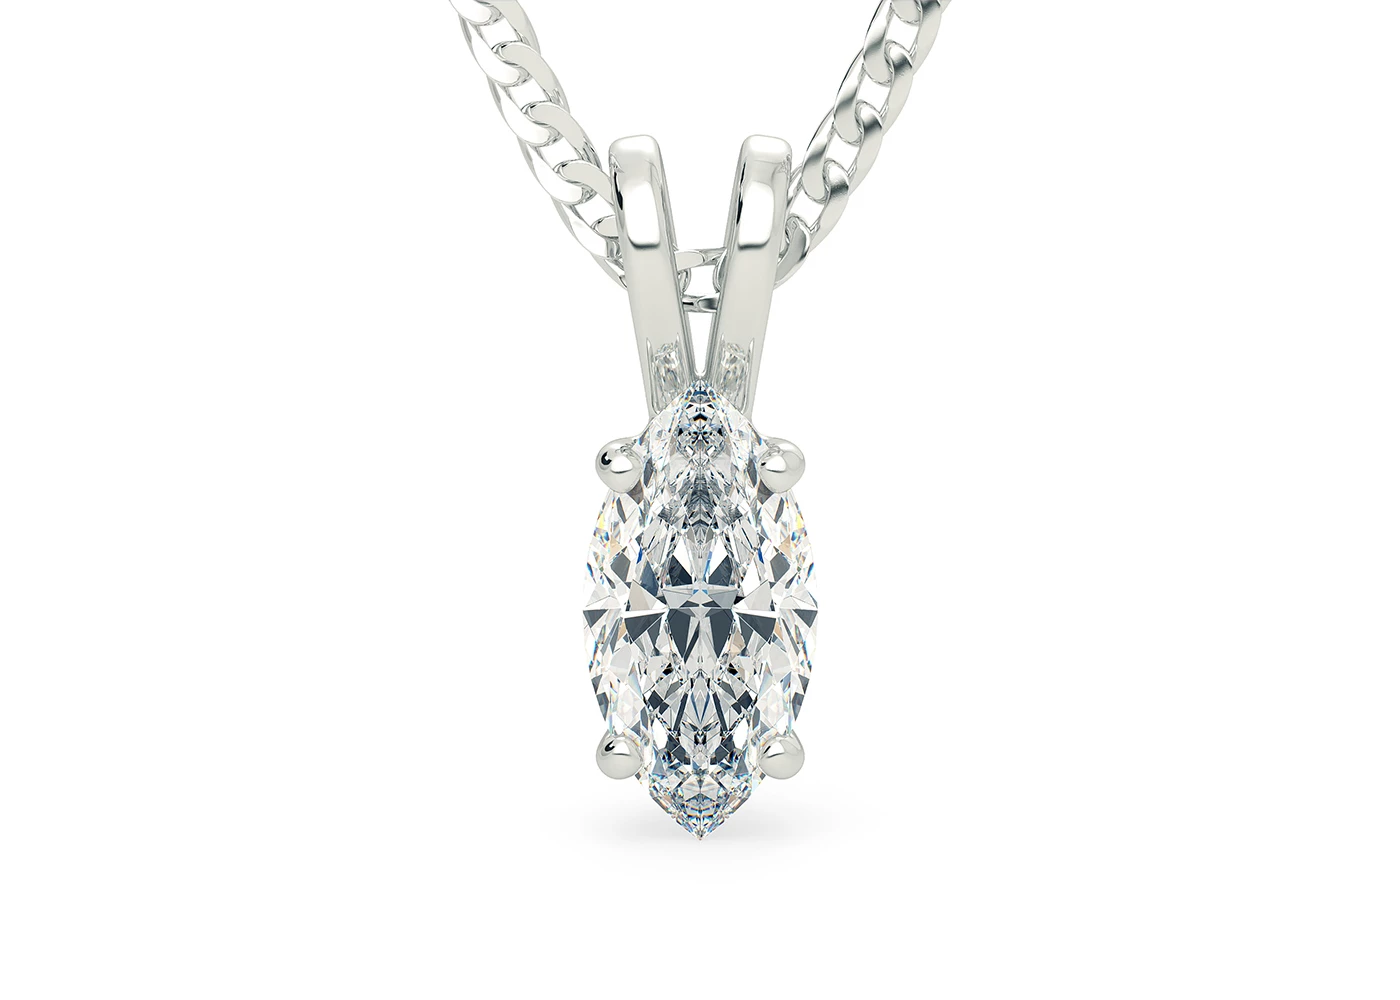 Marquise Ettore Diamond Pendant in Platinum